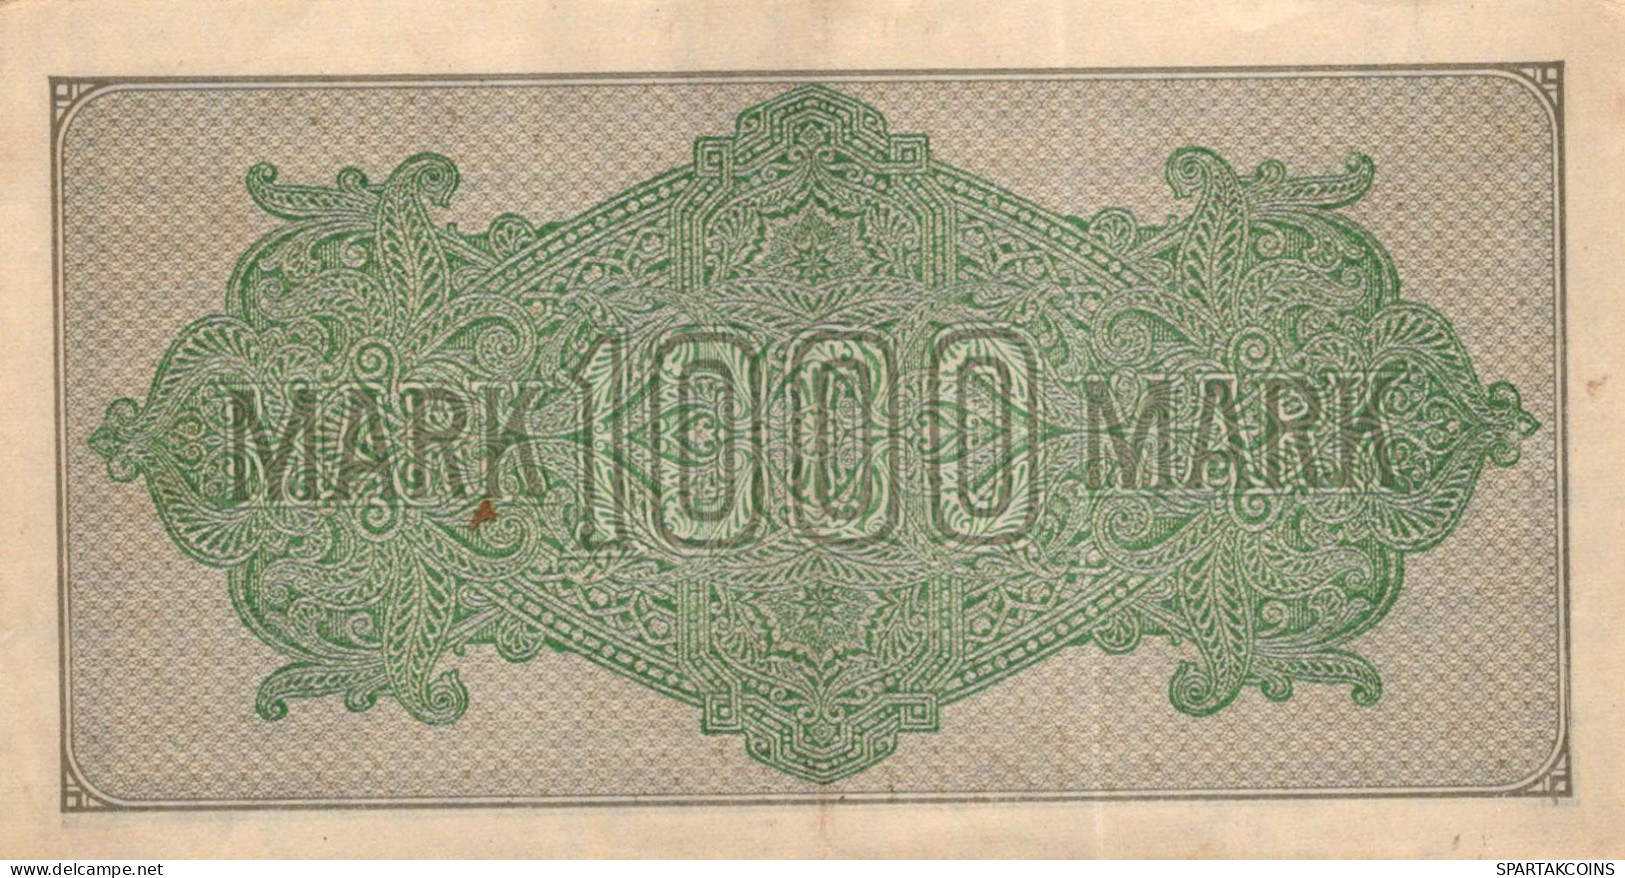 1000 MARK 1922 Stadt BERLIN DEUTSCHLAND Papiergeld Banknote #PL395 - [11] Local Banknote Issues